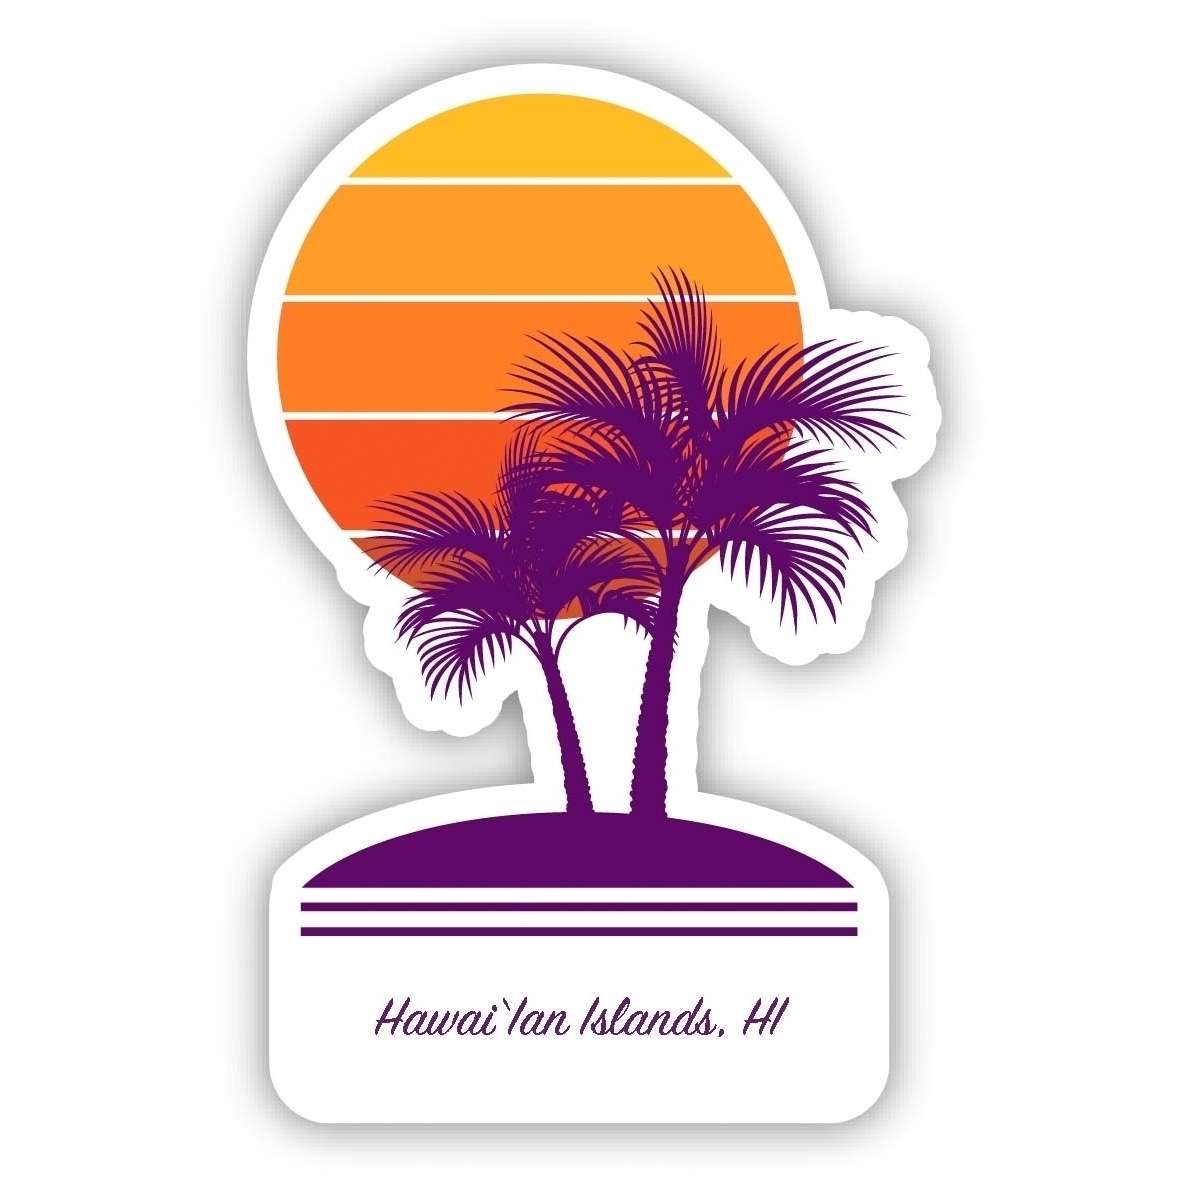 HawaiâIan Islands Hawaii Souvenir 4 Inch Vinyl Decal Sticker Palm Design